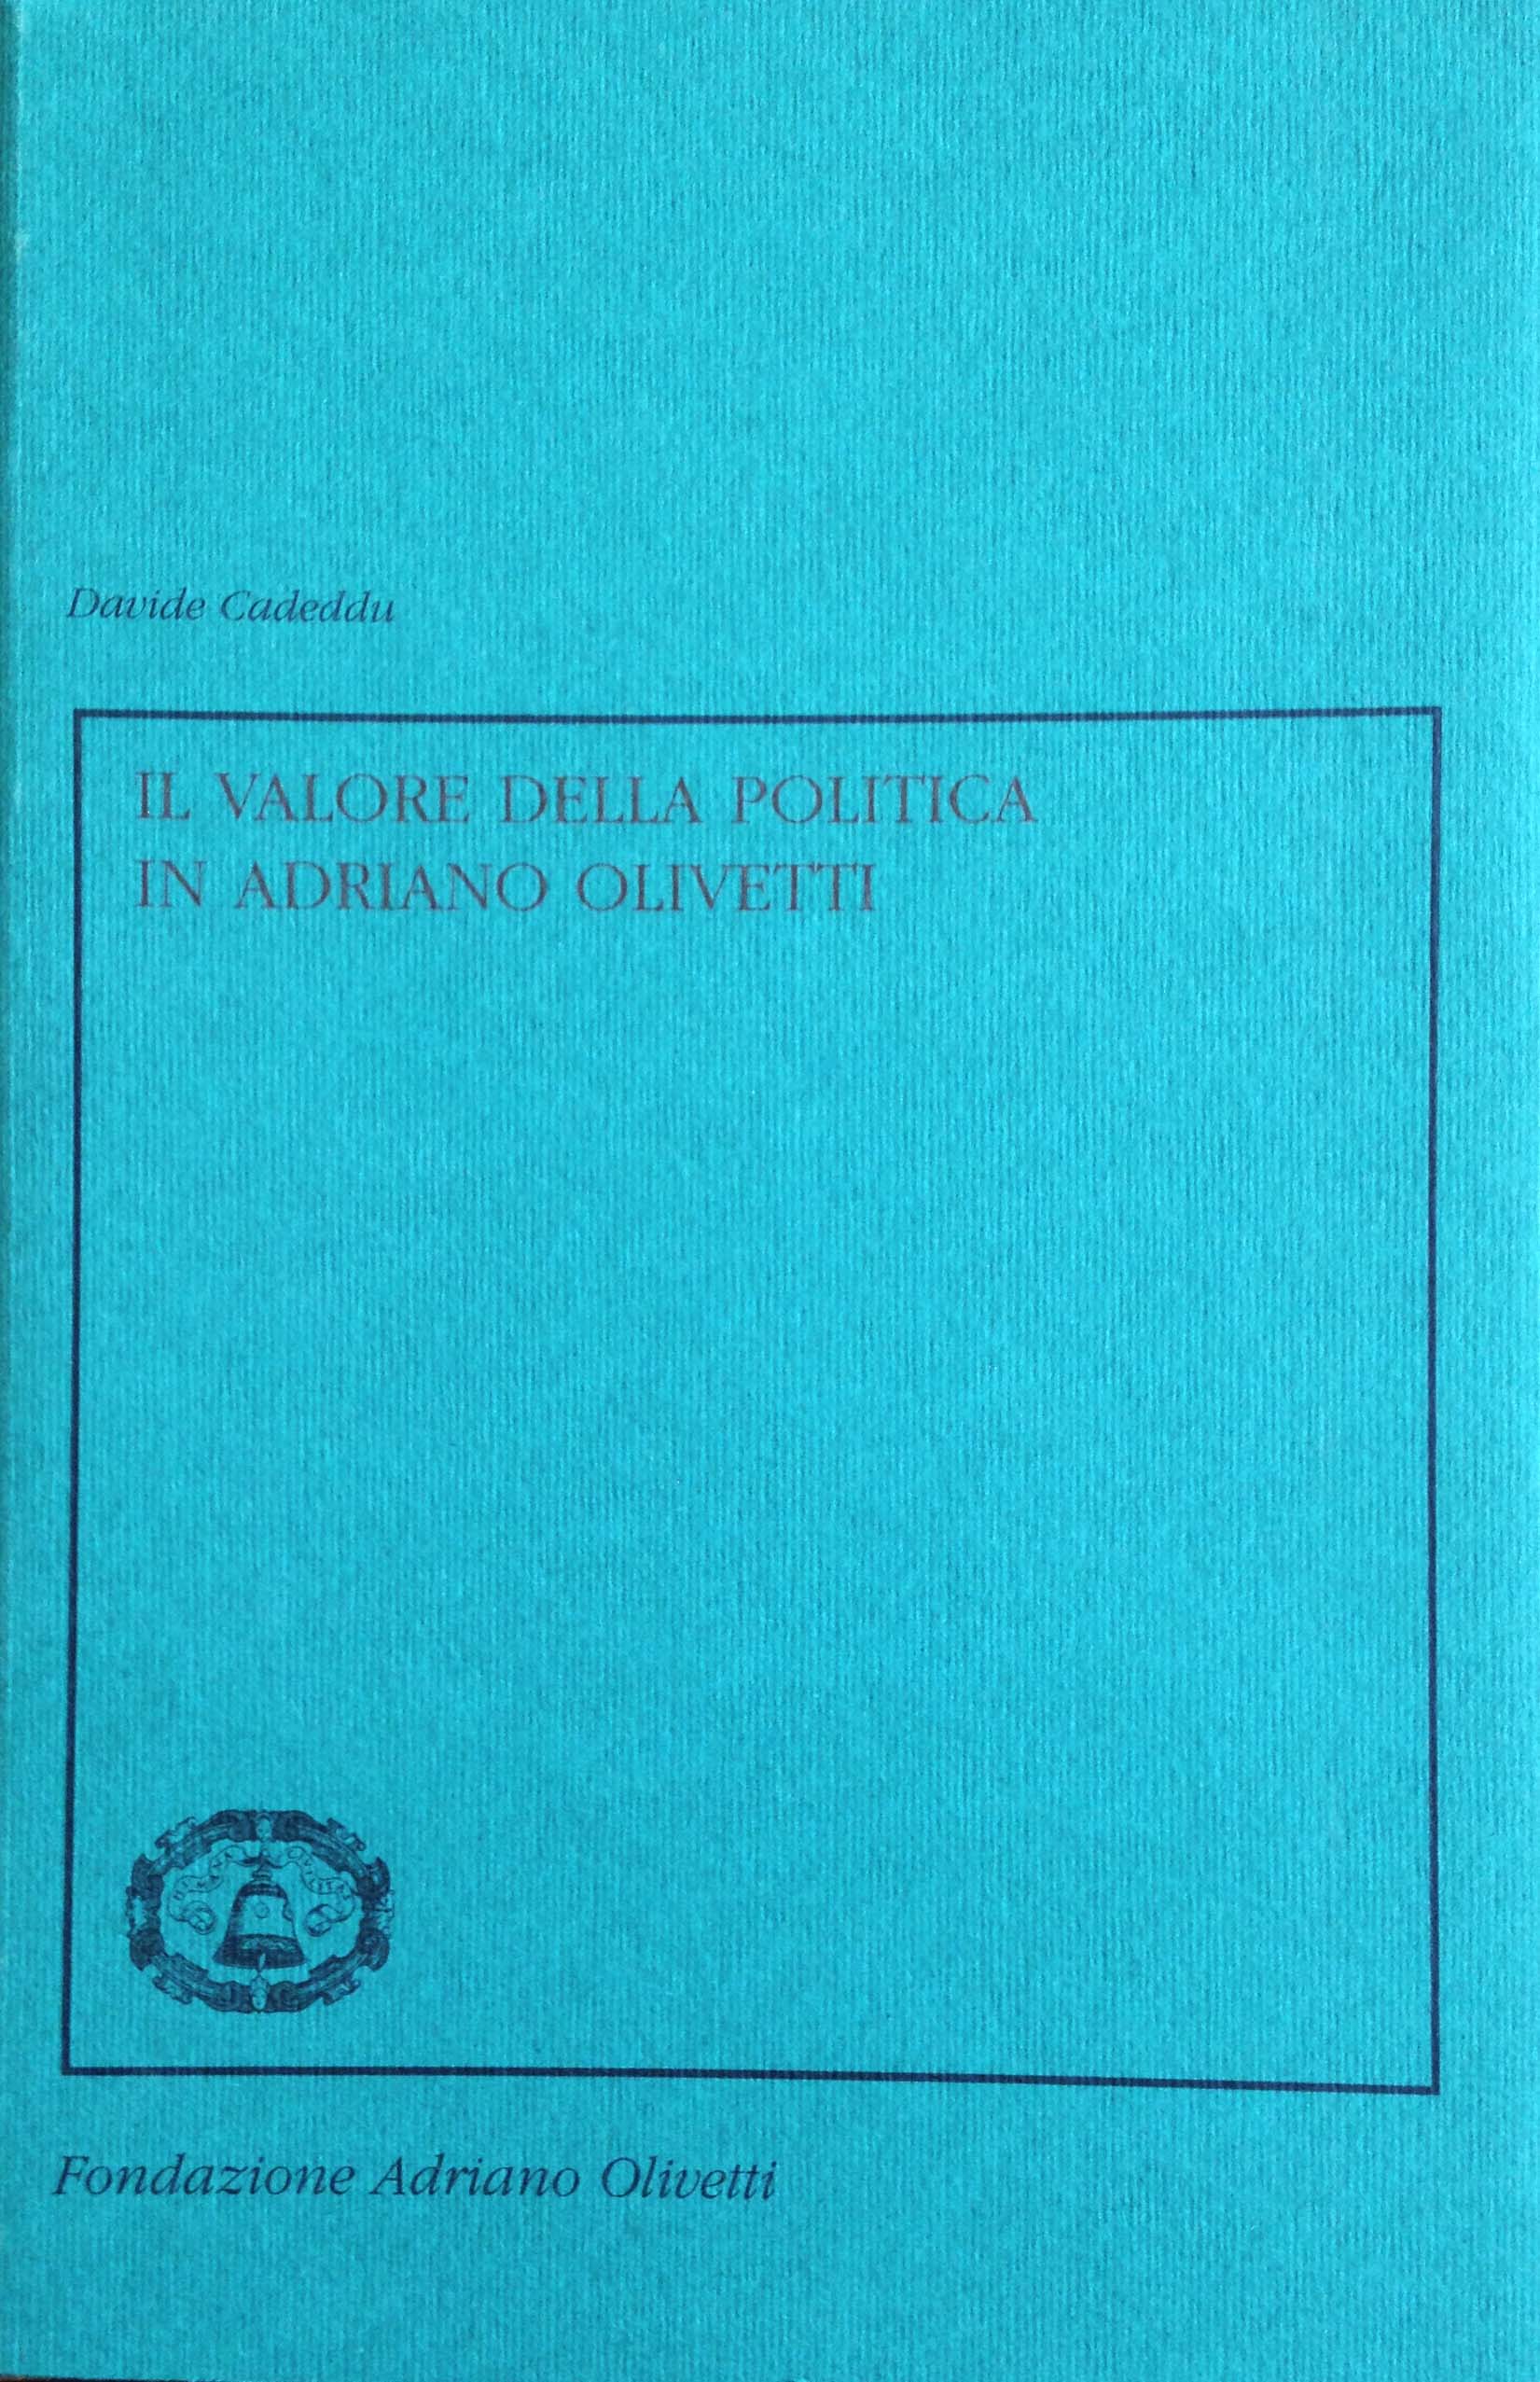 I Quaderni della Fondazione Adriano Olivetti